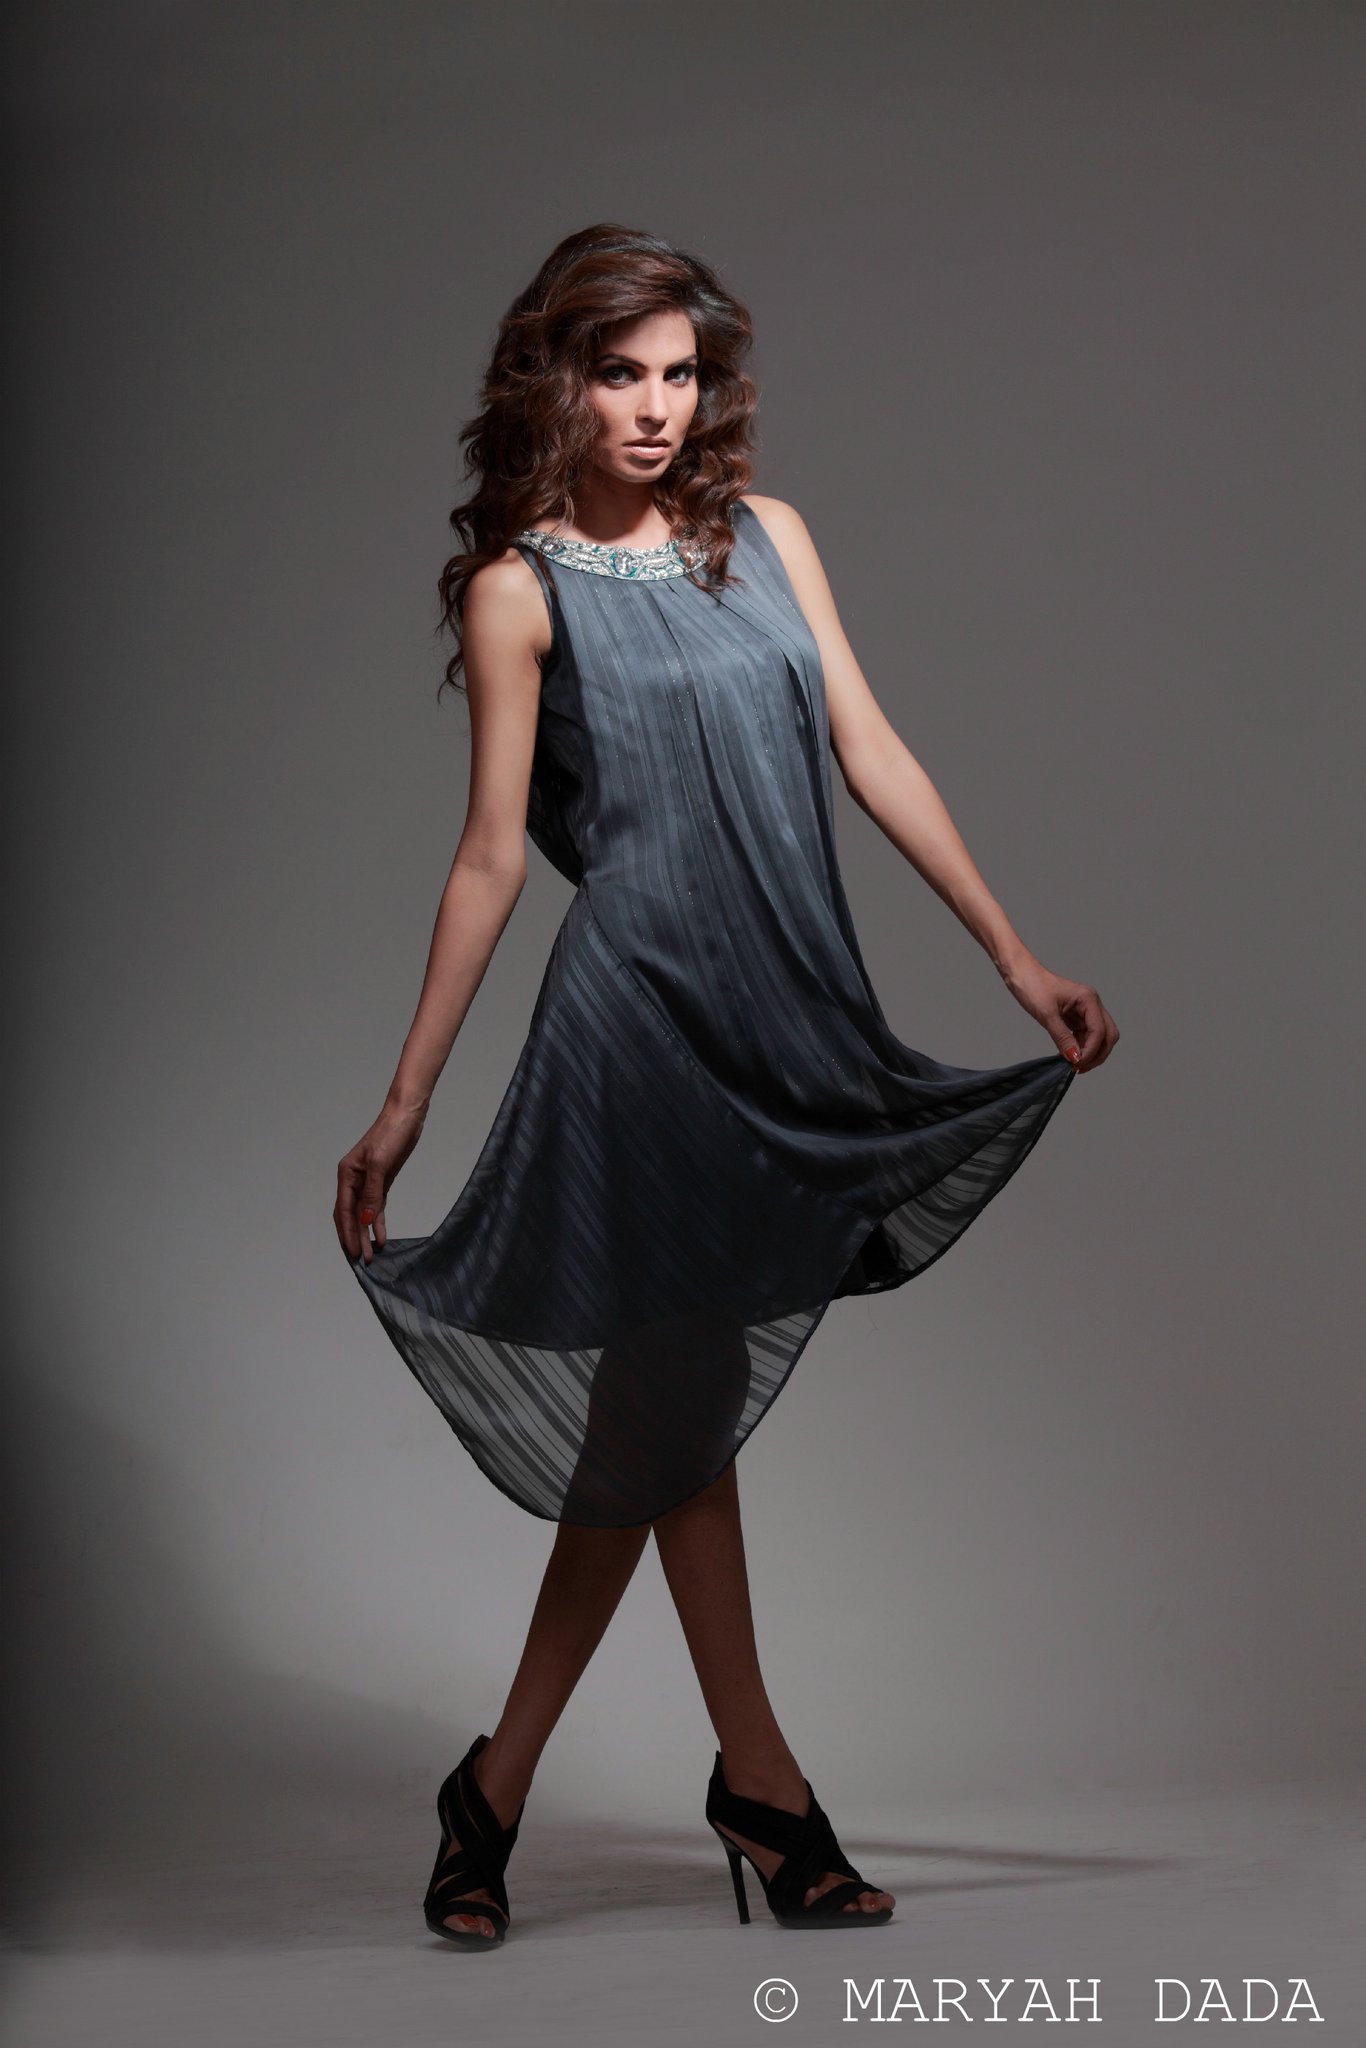 classy semiformal dresses for womenmaryah dada